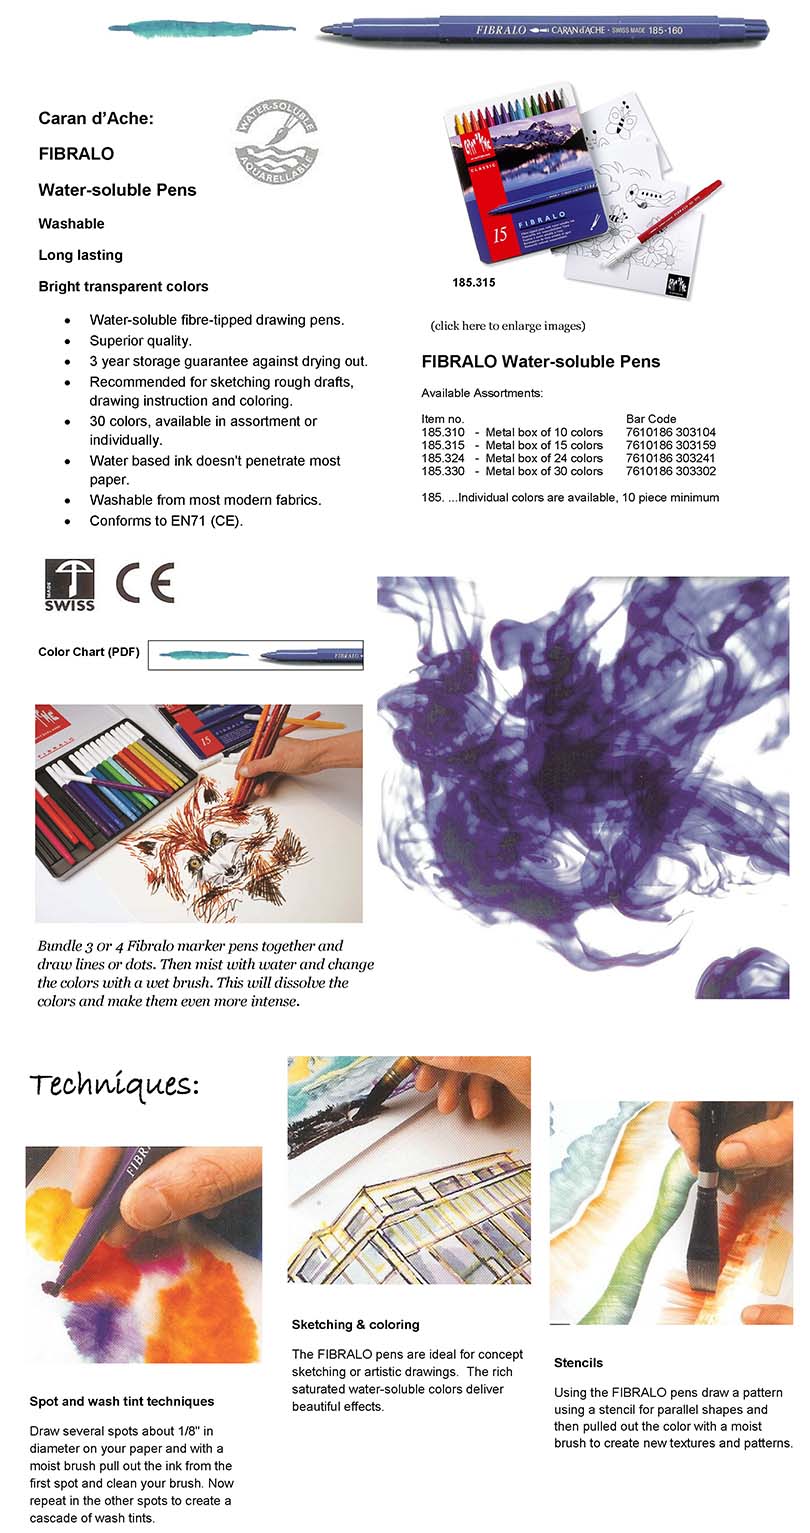 Acheter en ligne CARAN D'ACHE Fibralo Crayon feutre (Multicolore